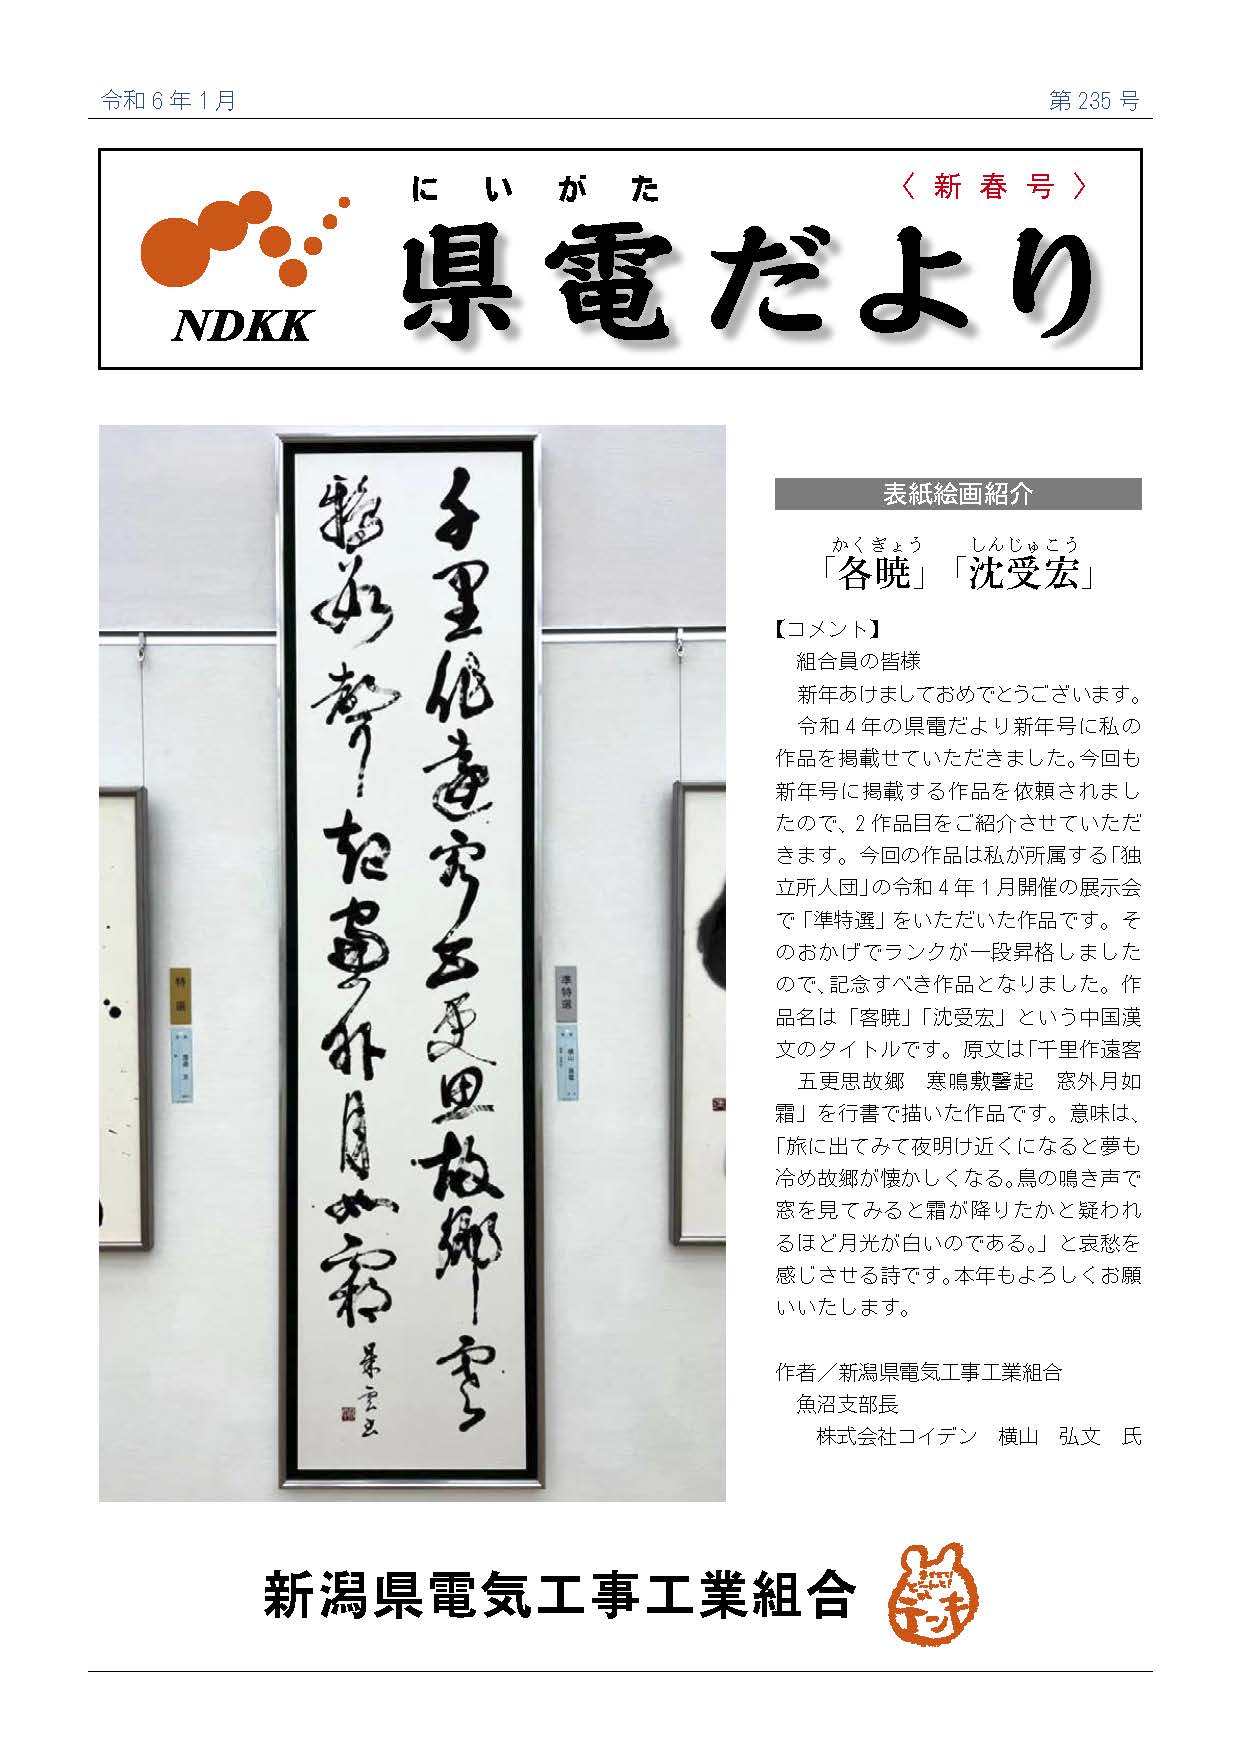 広報誌『県電だより』令和６年１月号を掲載しました。